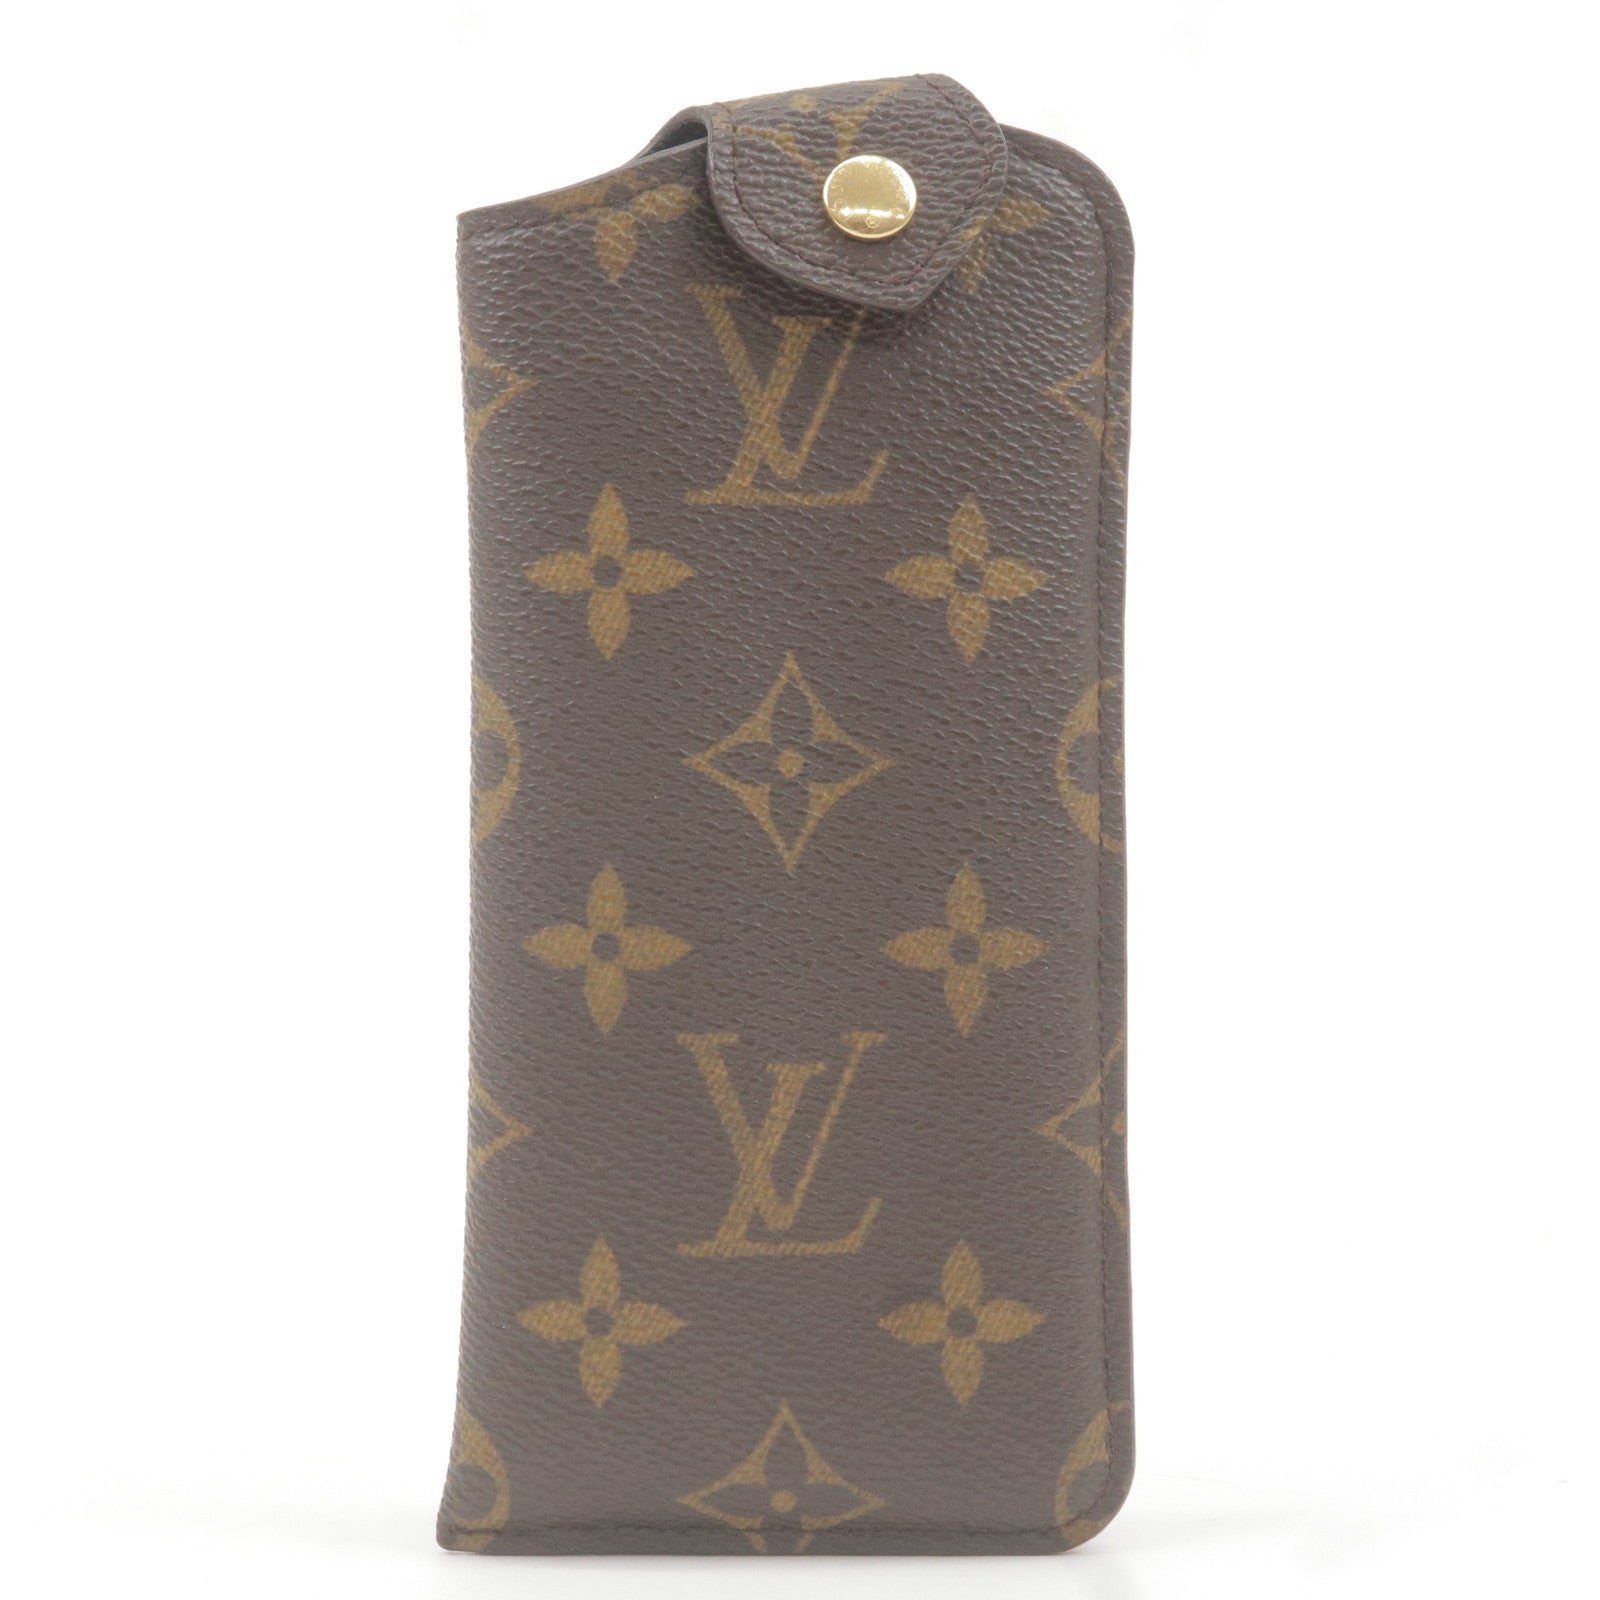 Louis Vuitton Trouville Monogram - THE PURSE AFFAIR